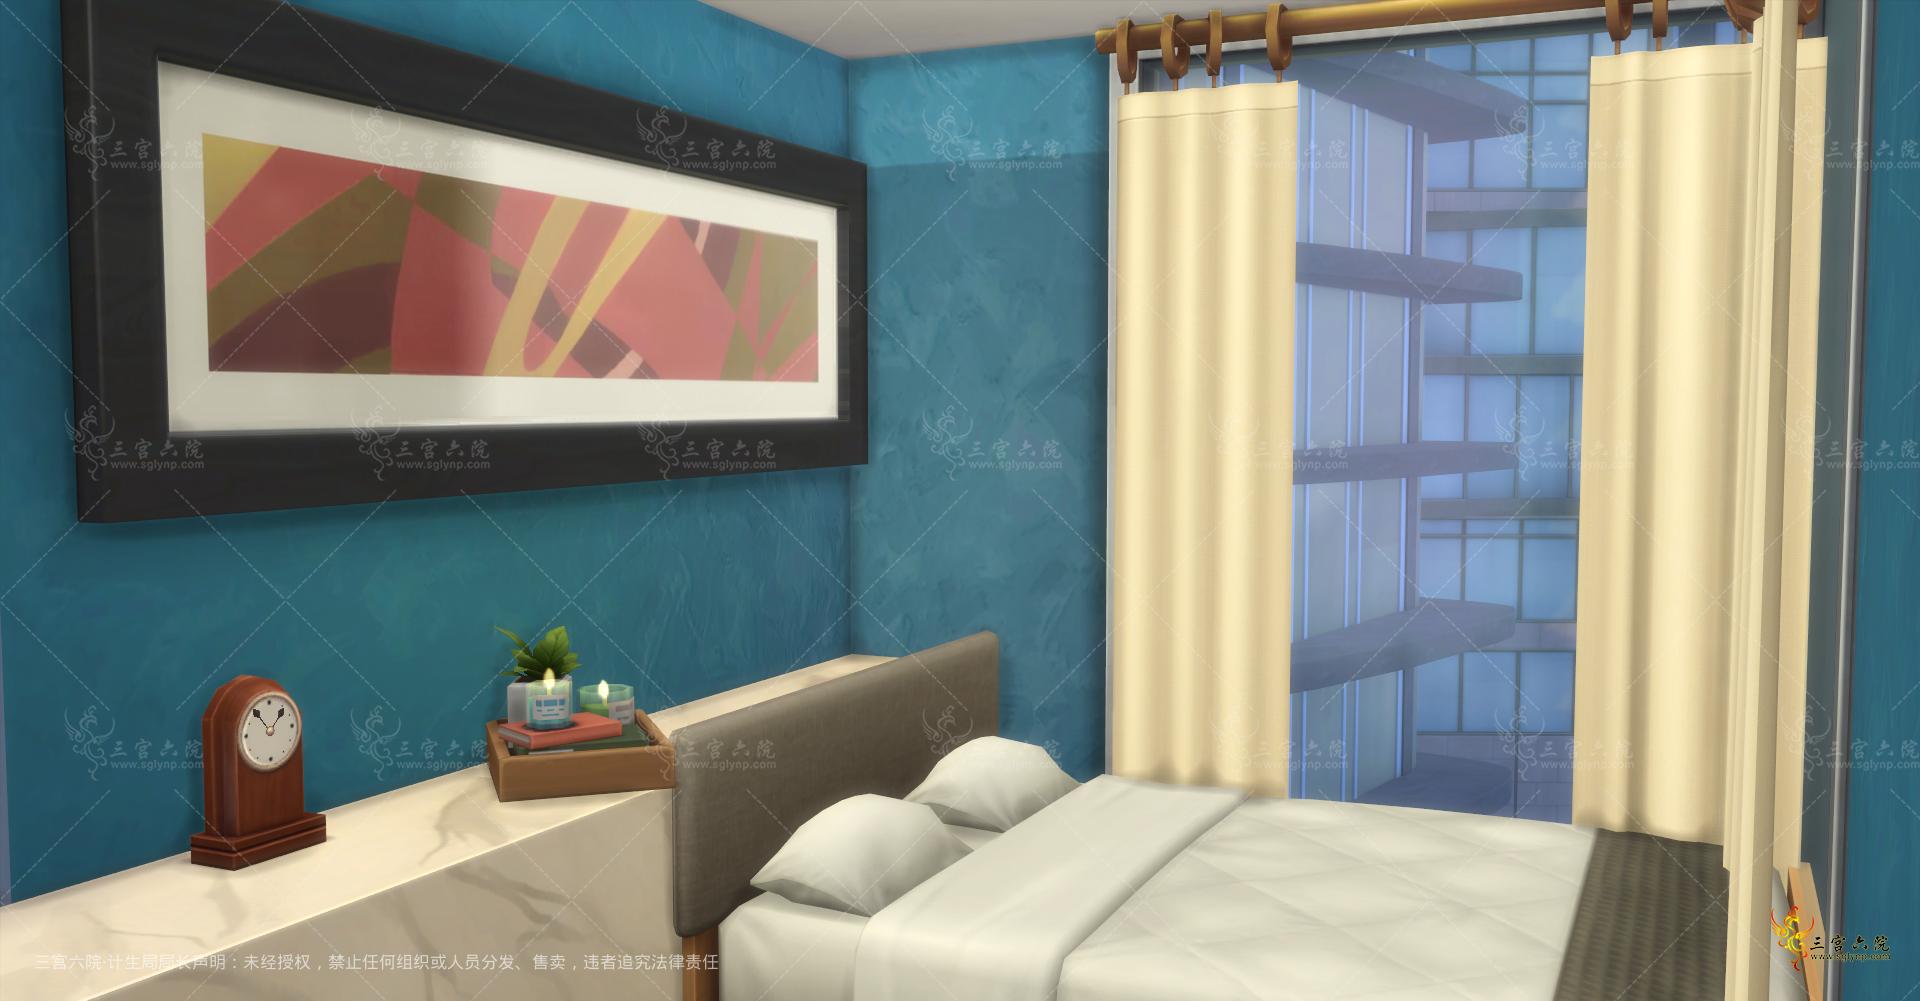 Sims 4 Screenshot 2022.01.01 - 21.11.34.24.png